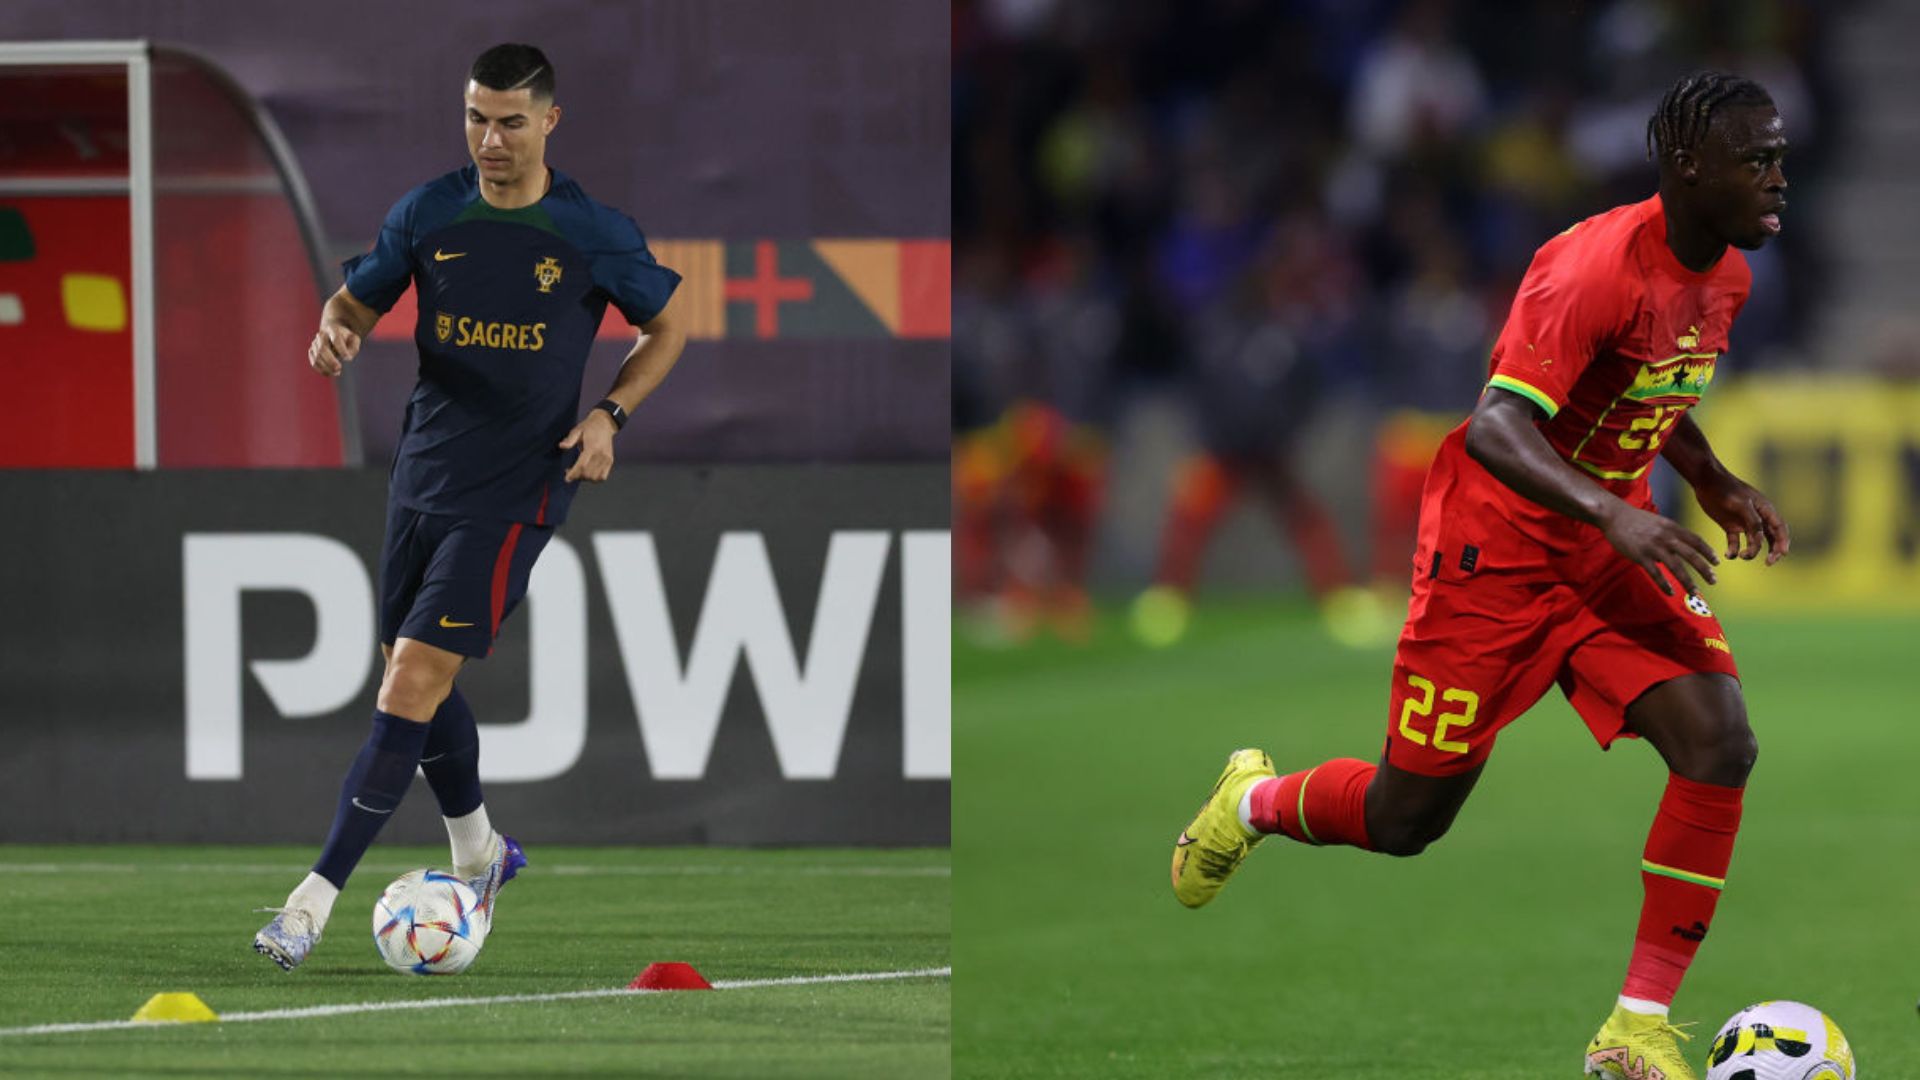 Onde assistir ao jogo Portugal x Gana? Veja online grátis